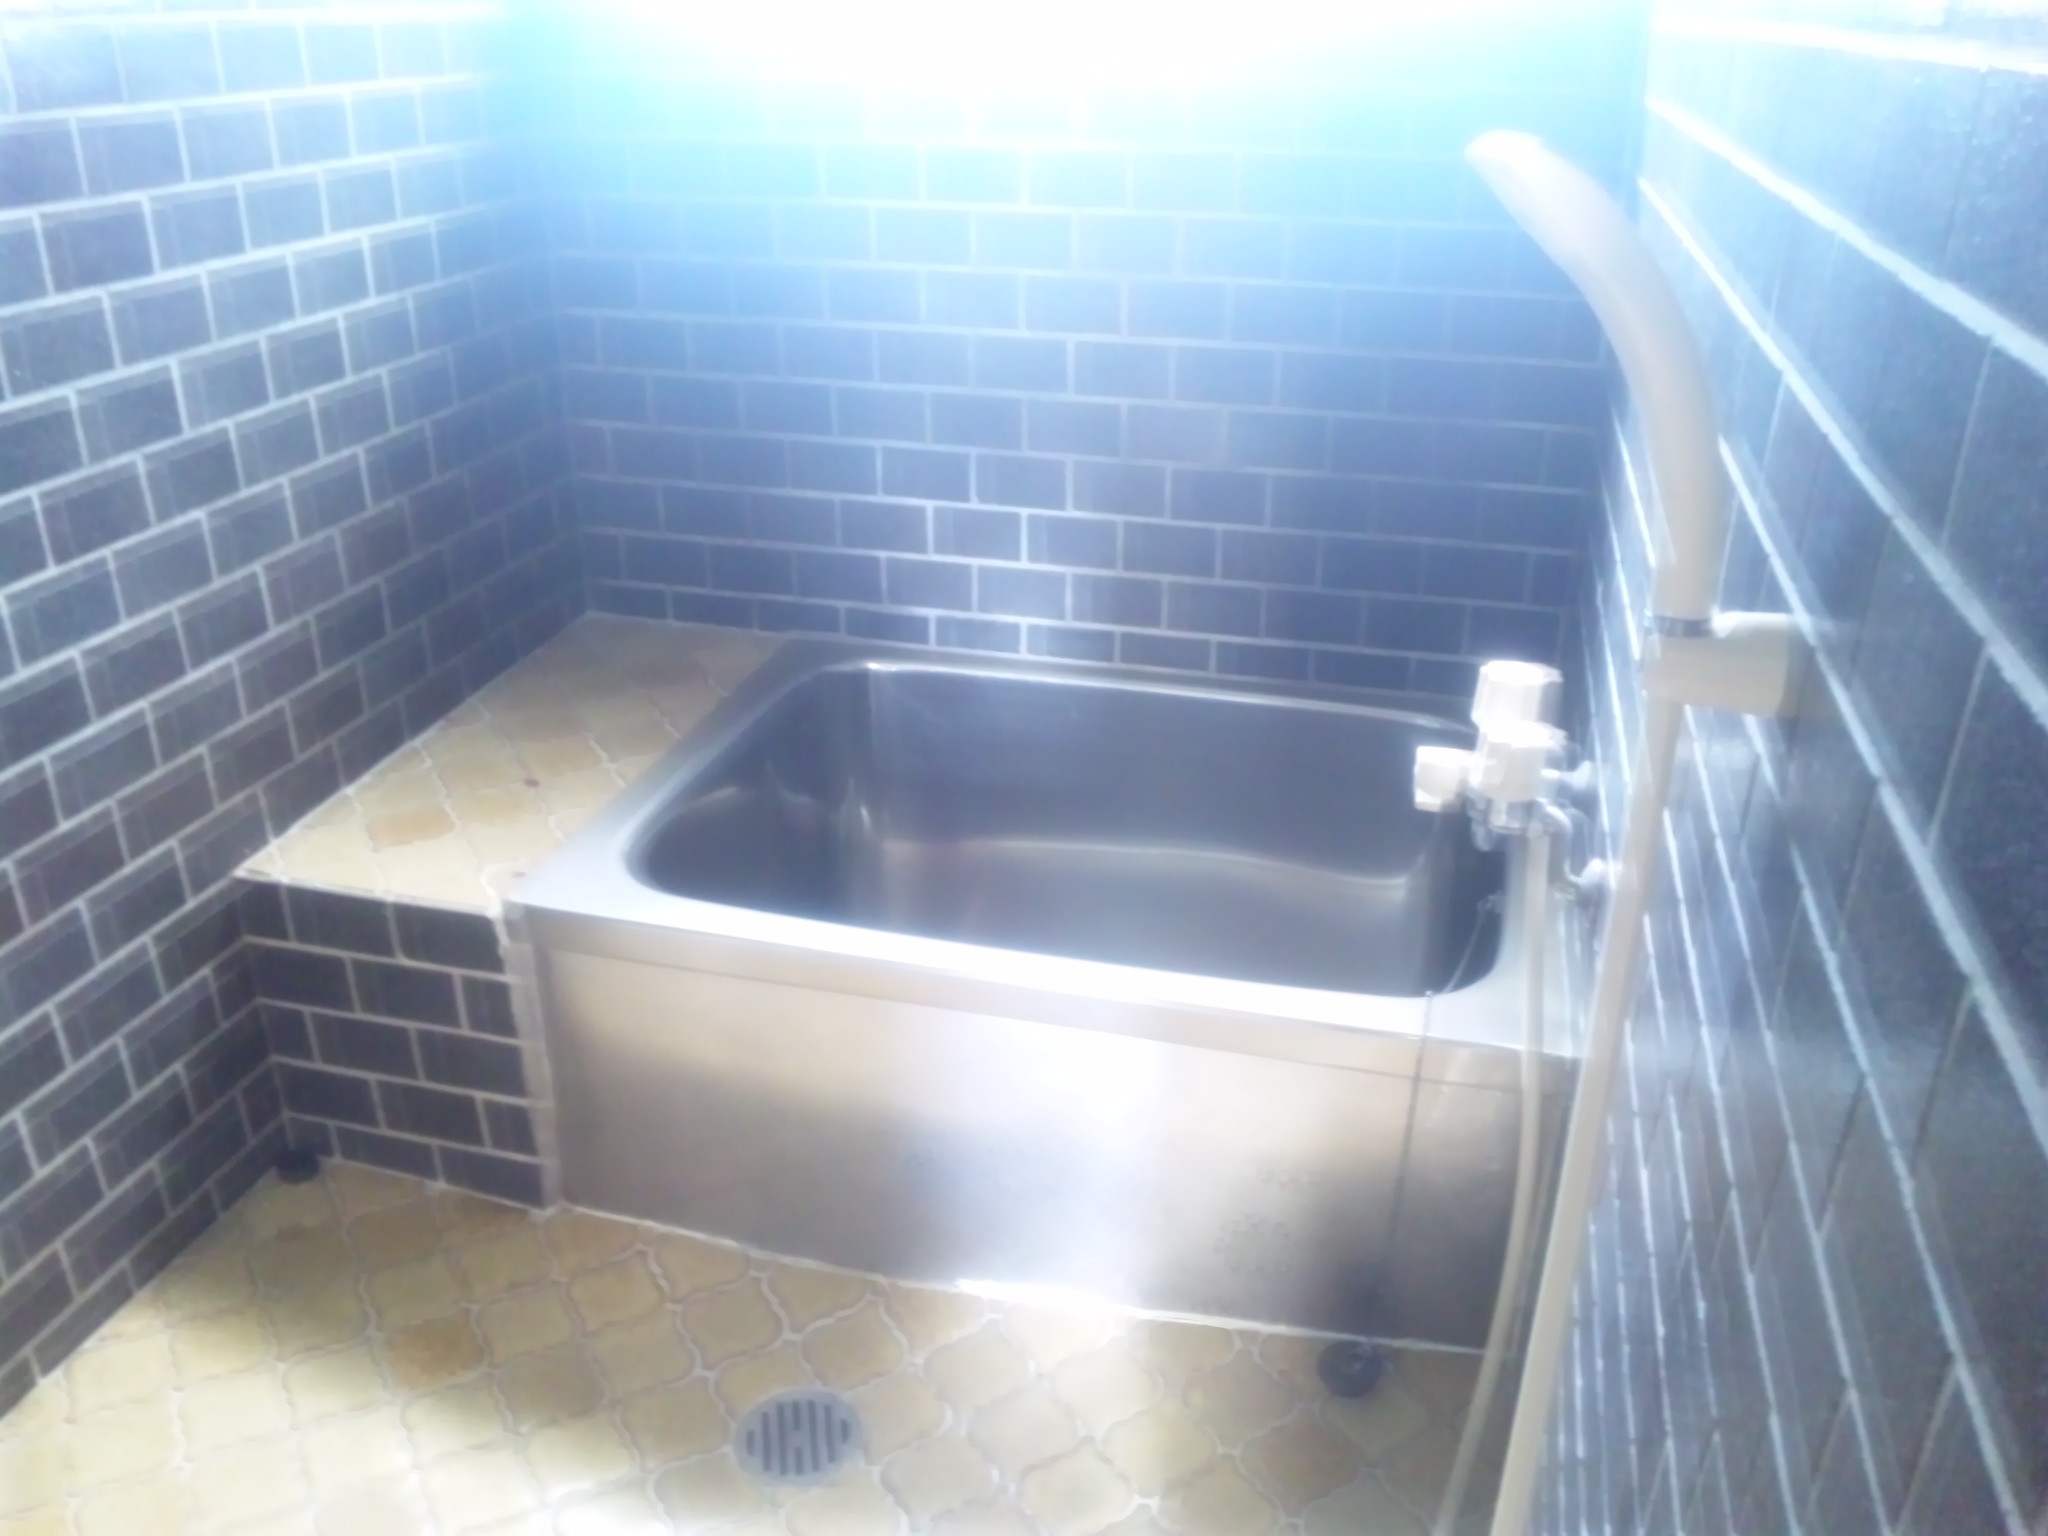 Bath. Clean stainless steel bath